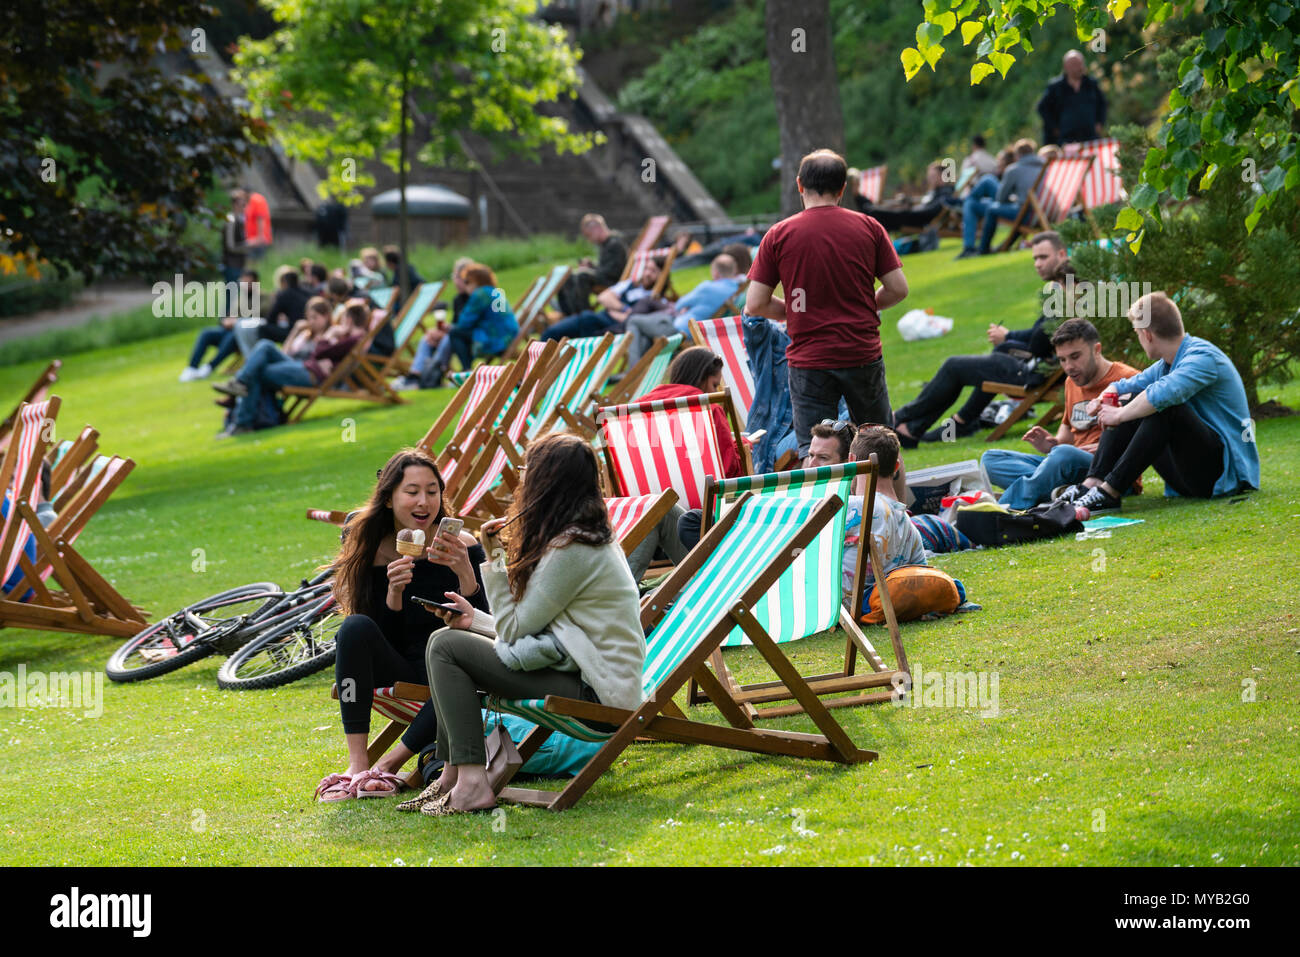 Menschen entspannend auf den Liegestühlen am Nachmittag Sonne in die Princes Street Gardens in Edinburgh, Schottland, Großbritannien Stockfoto